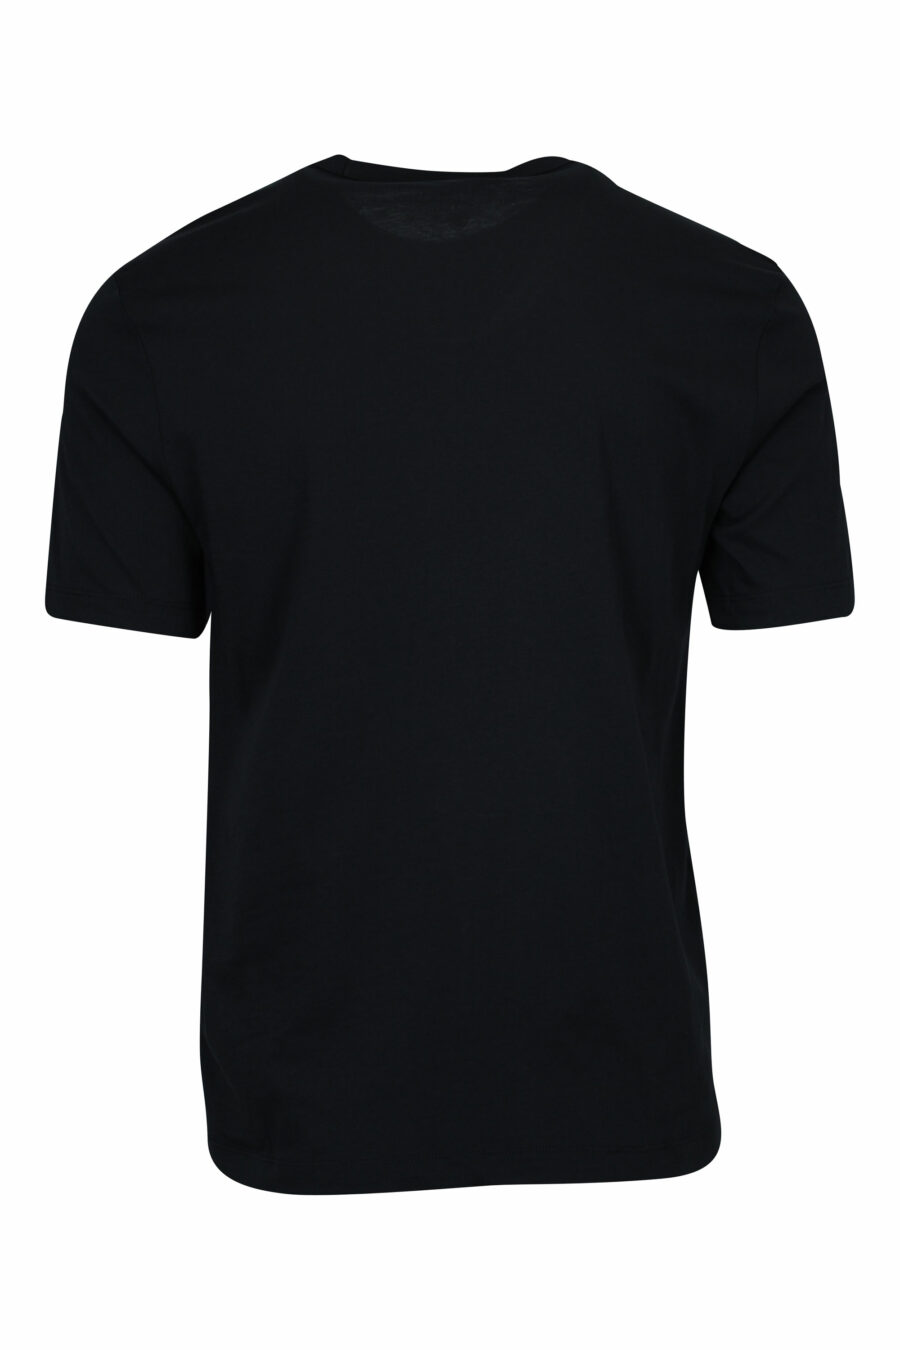 Schwarzes T-Shirt mit monochromem Maxilogo in der Mitte - 8058610799021 1